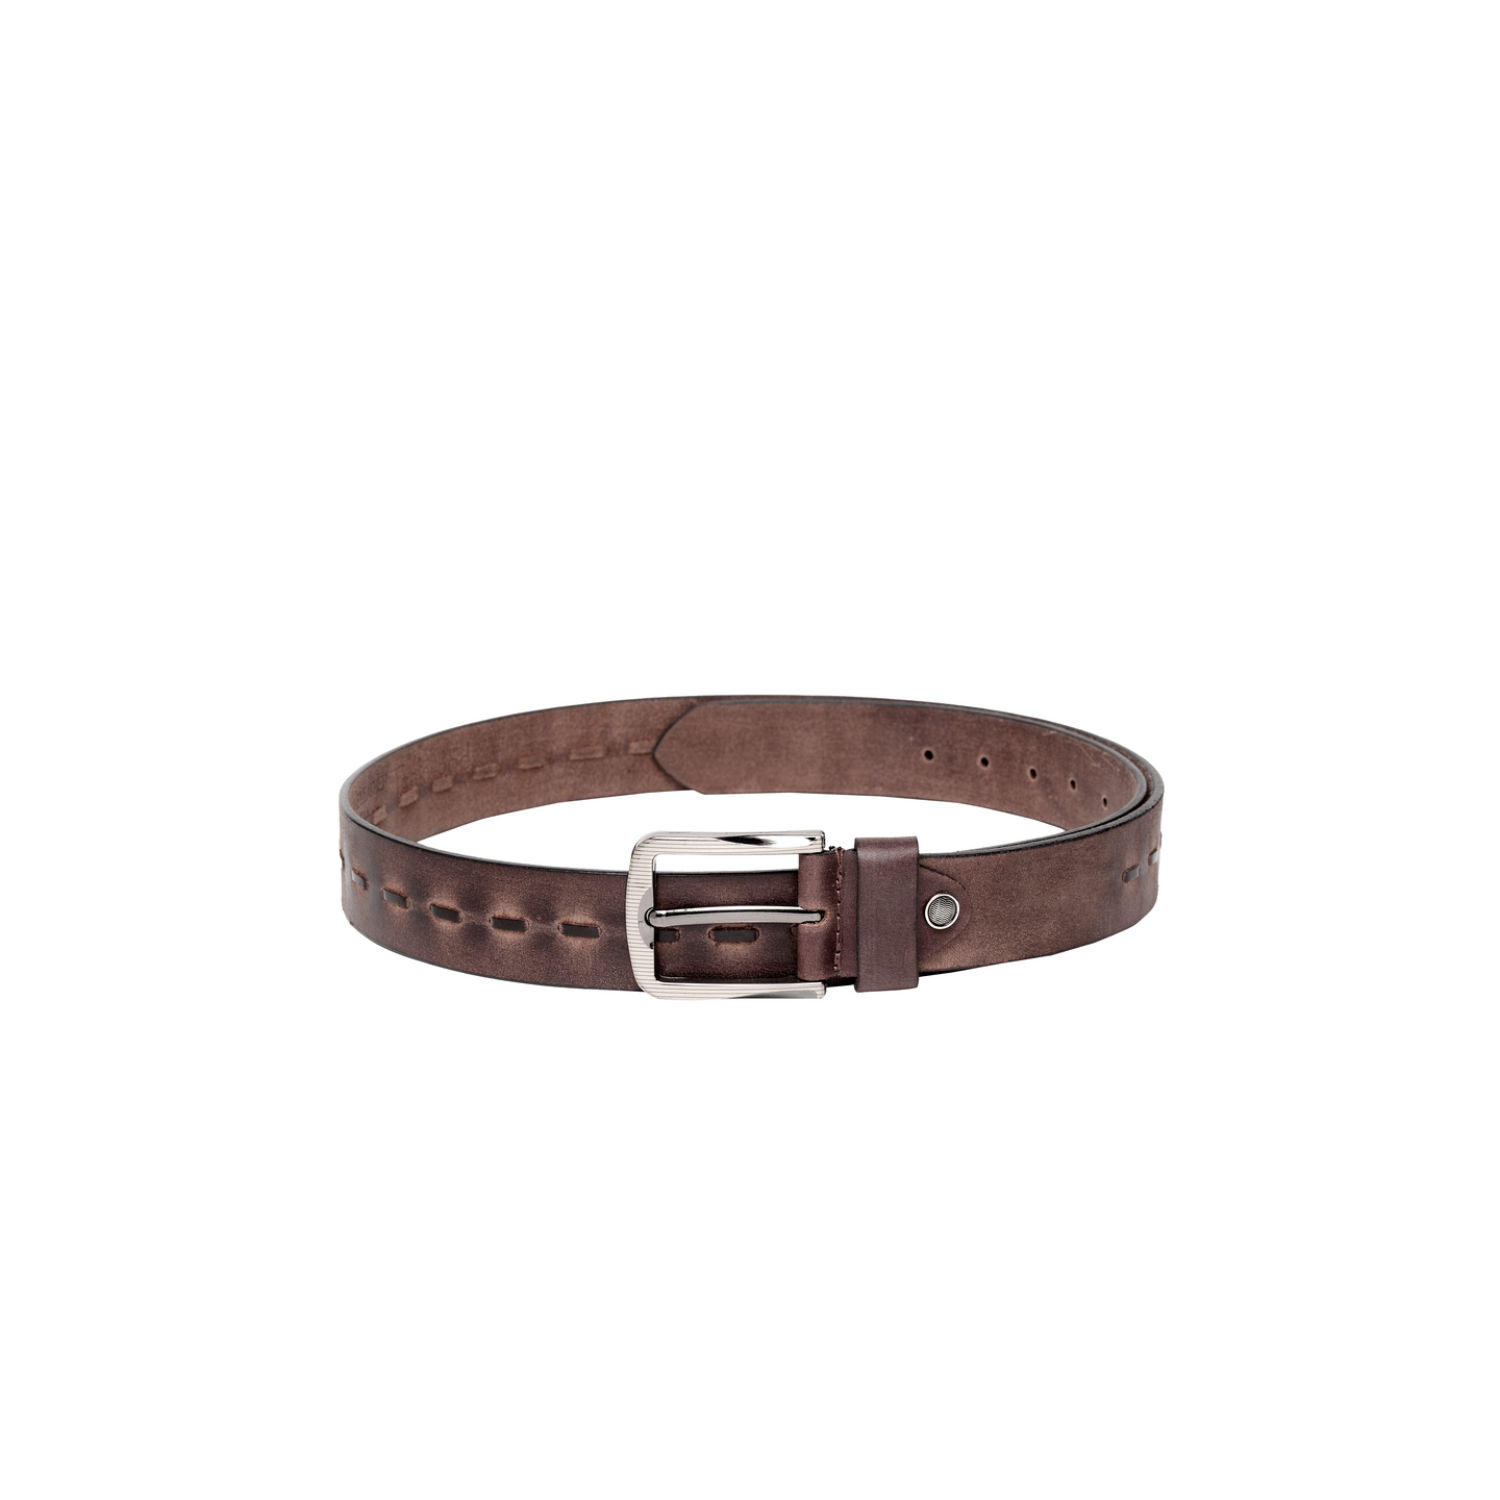 Buy Teakwood Dark Brown Patterned Genuine Leather Braided Belt online